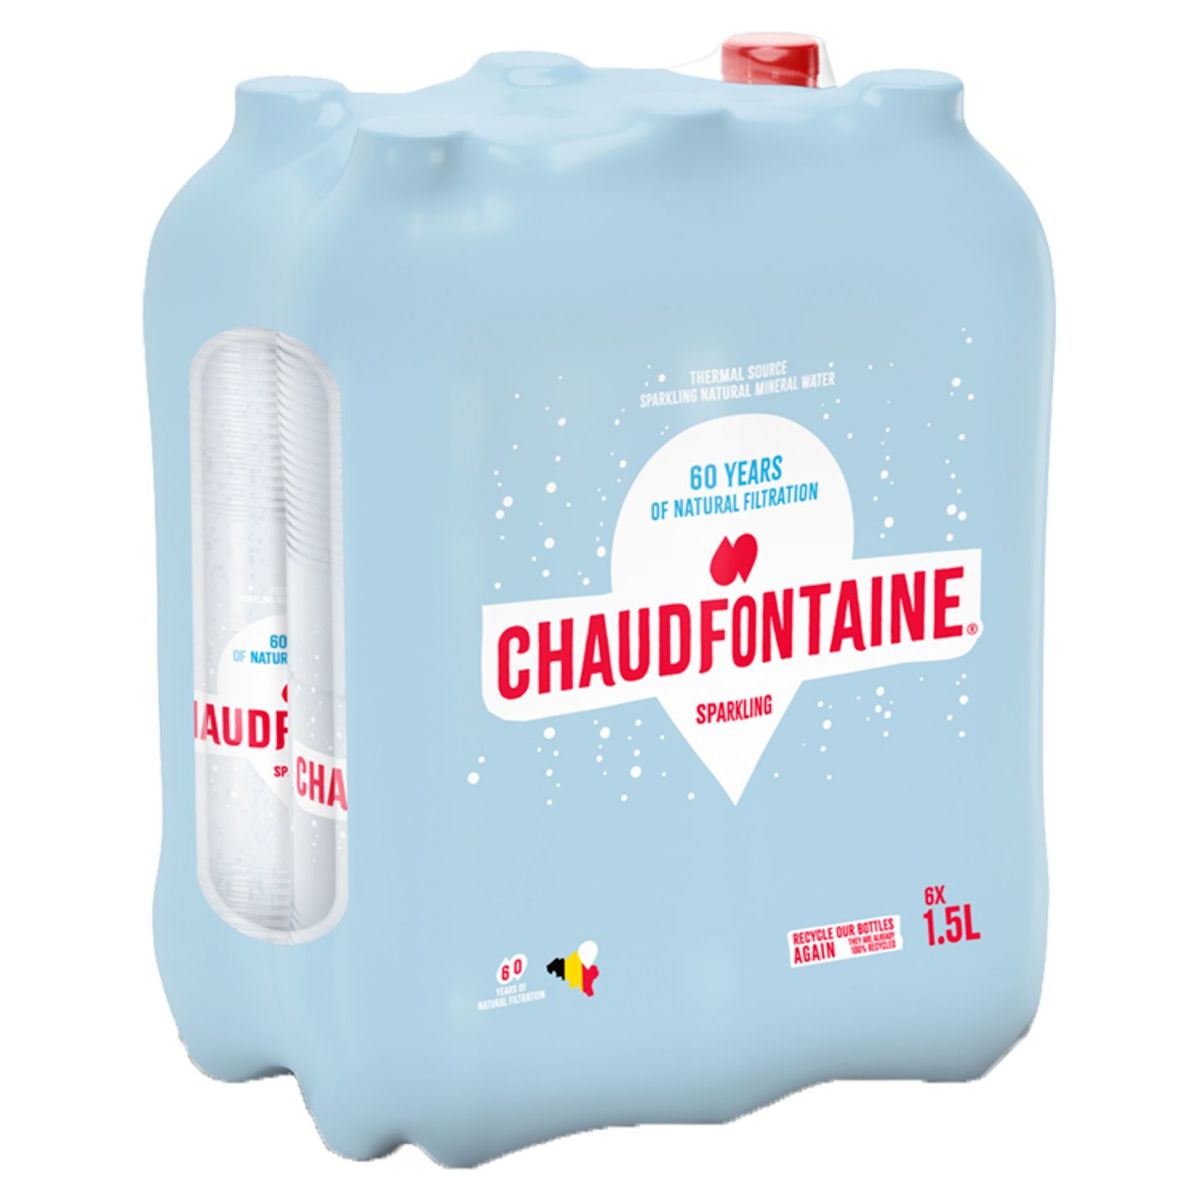 Chaudfontaine Sparkling Pet 1500ml X 6